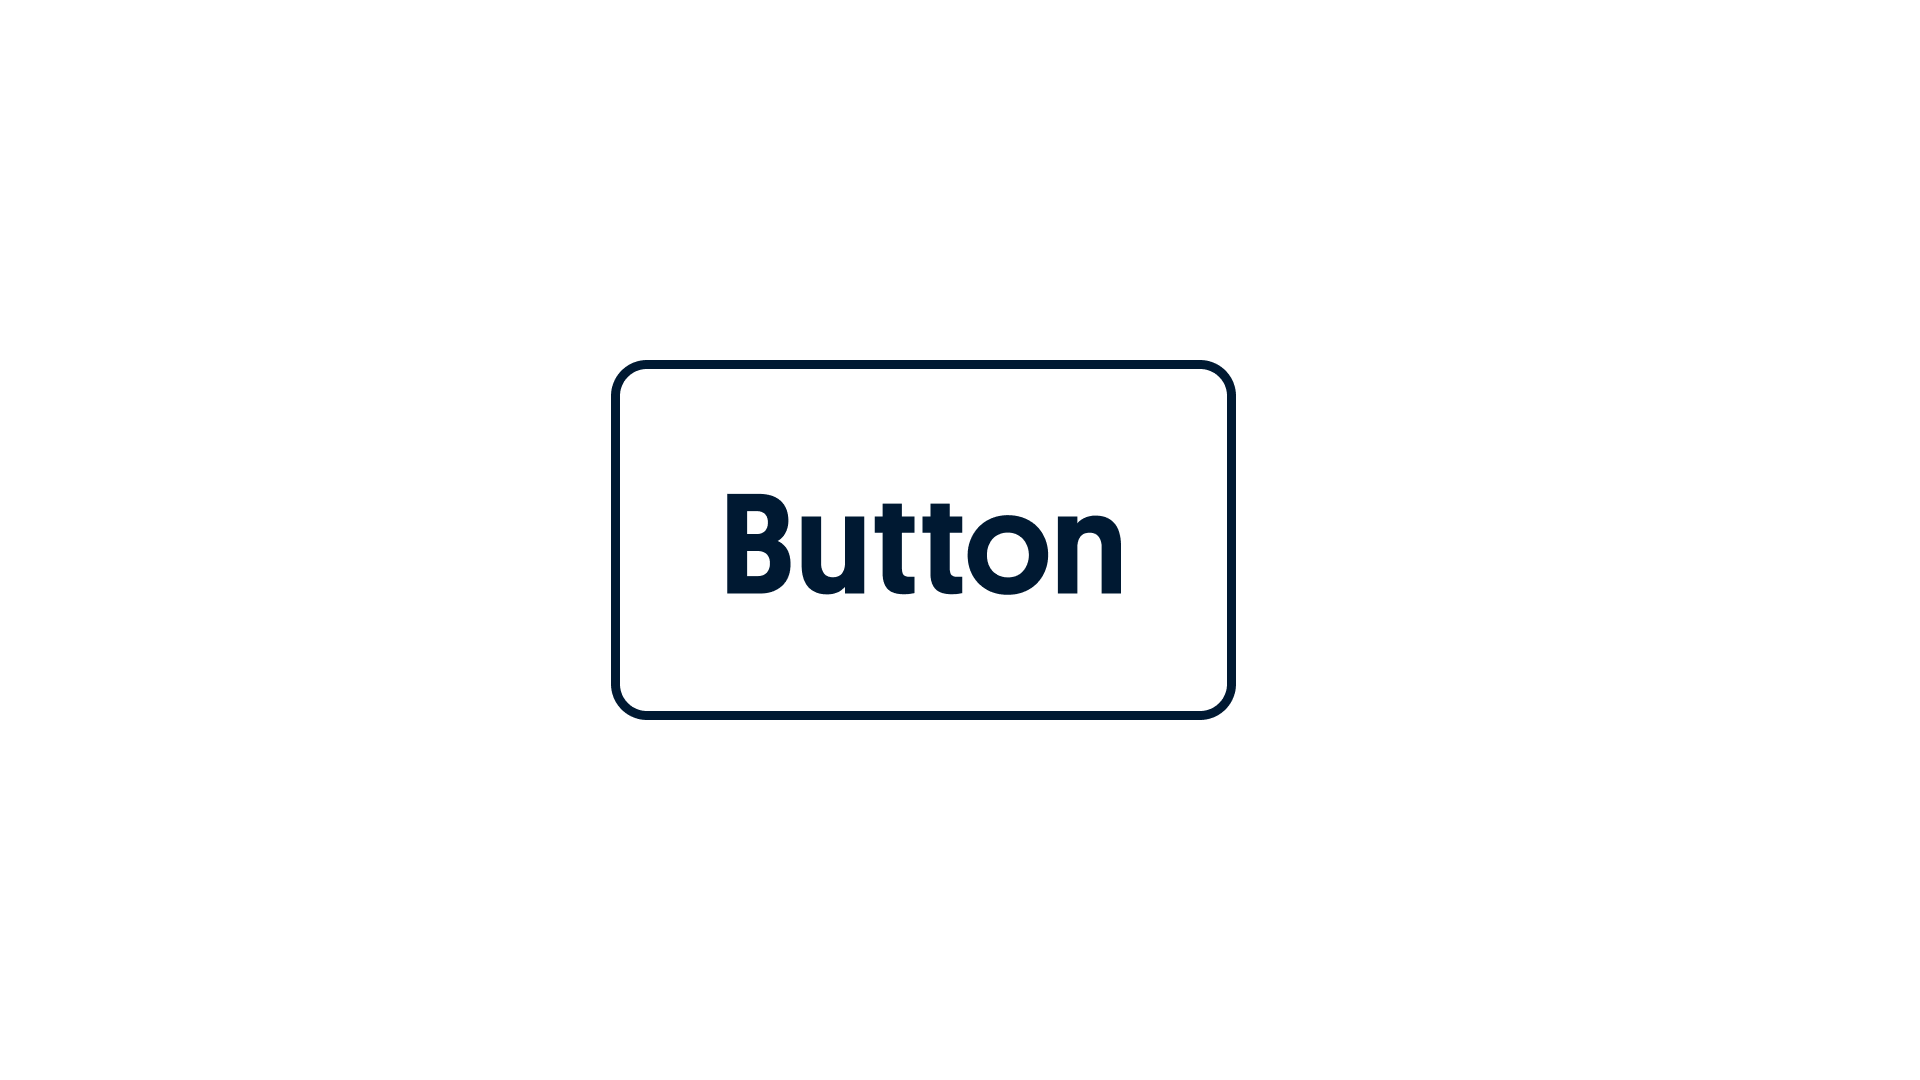 Thin button